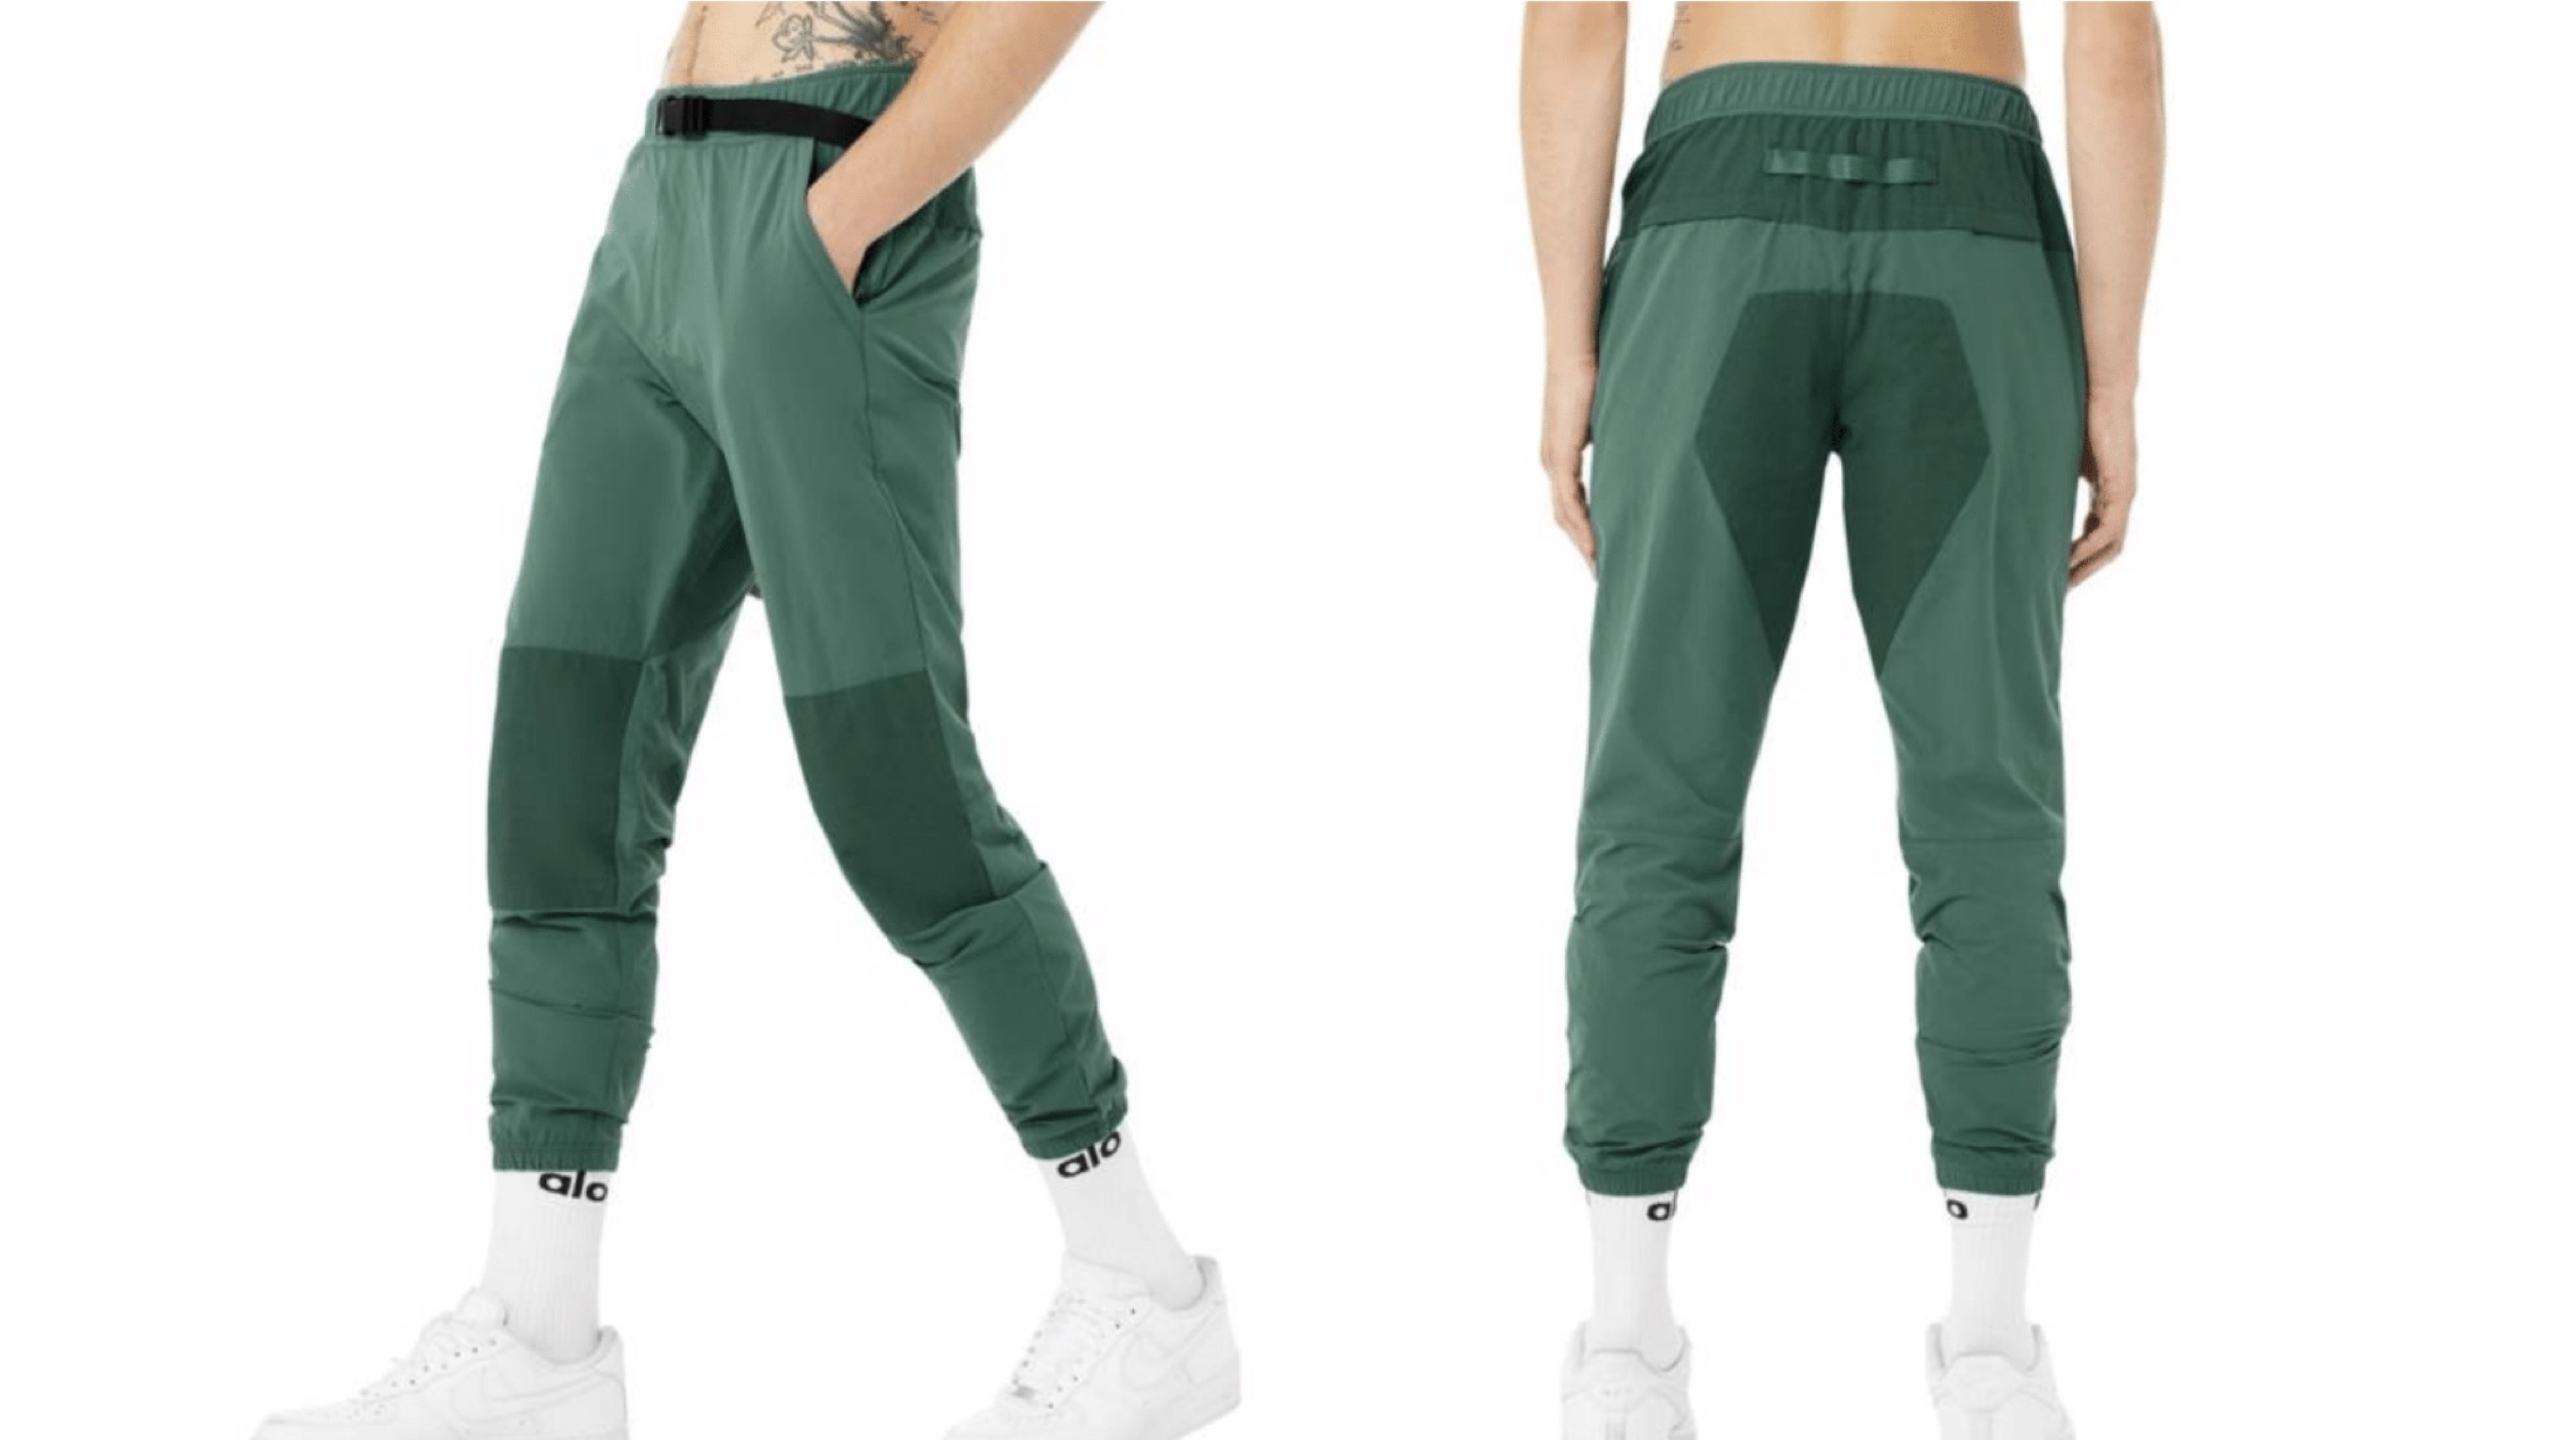 Green workout tech pants